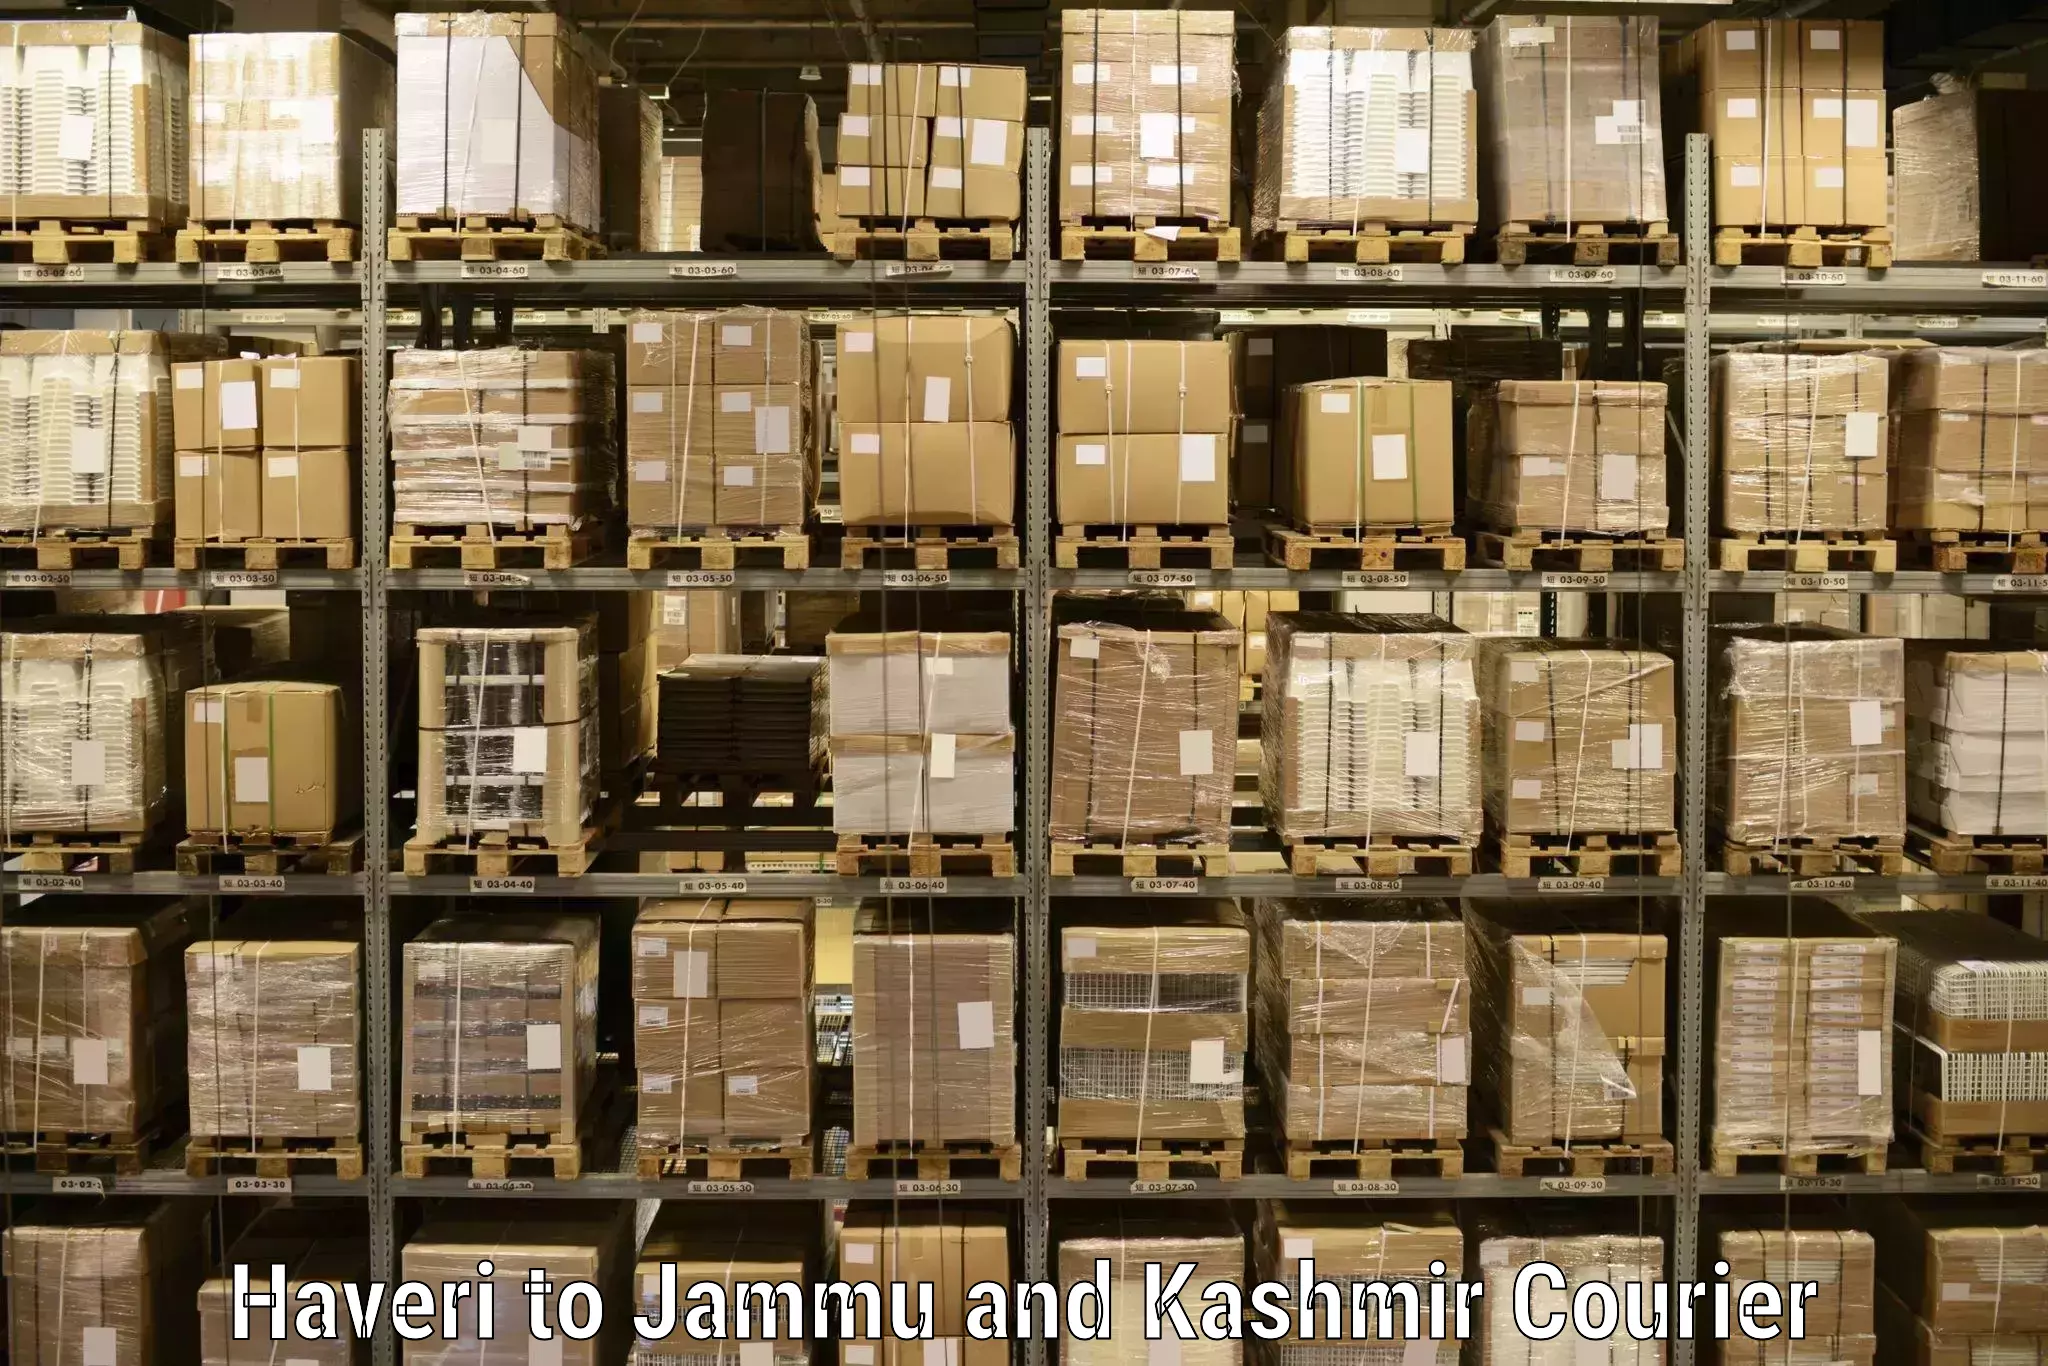 Same-day delivery options Haveri to Srinagar Kashmir